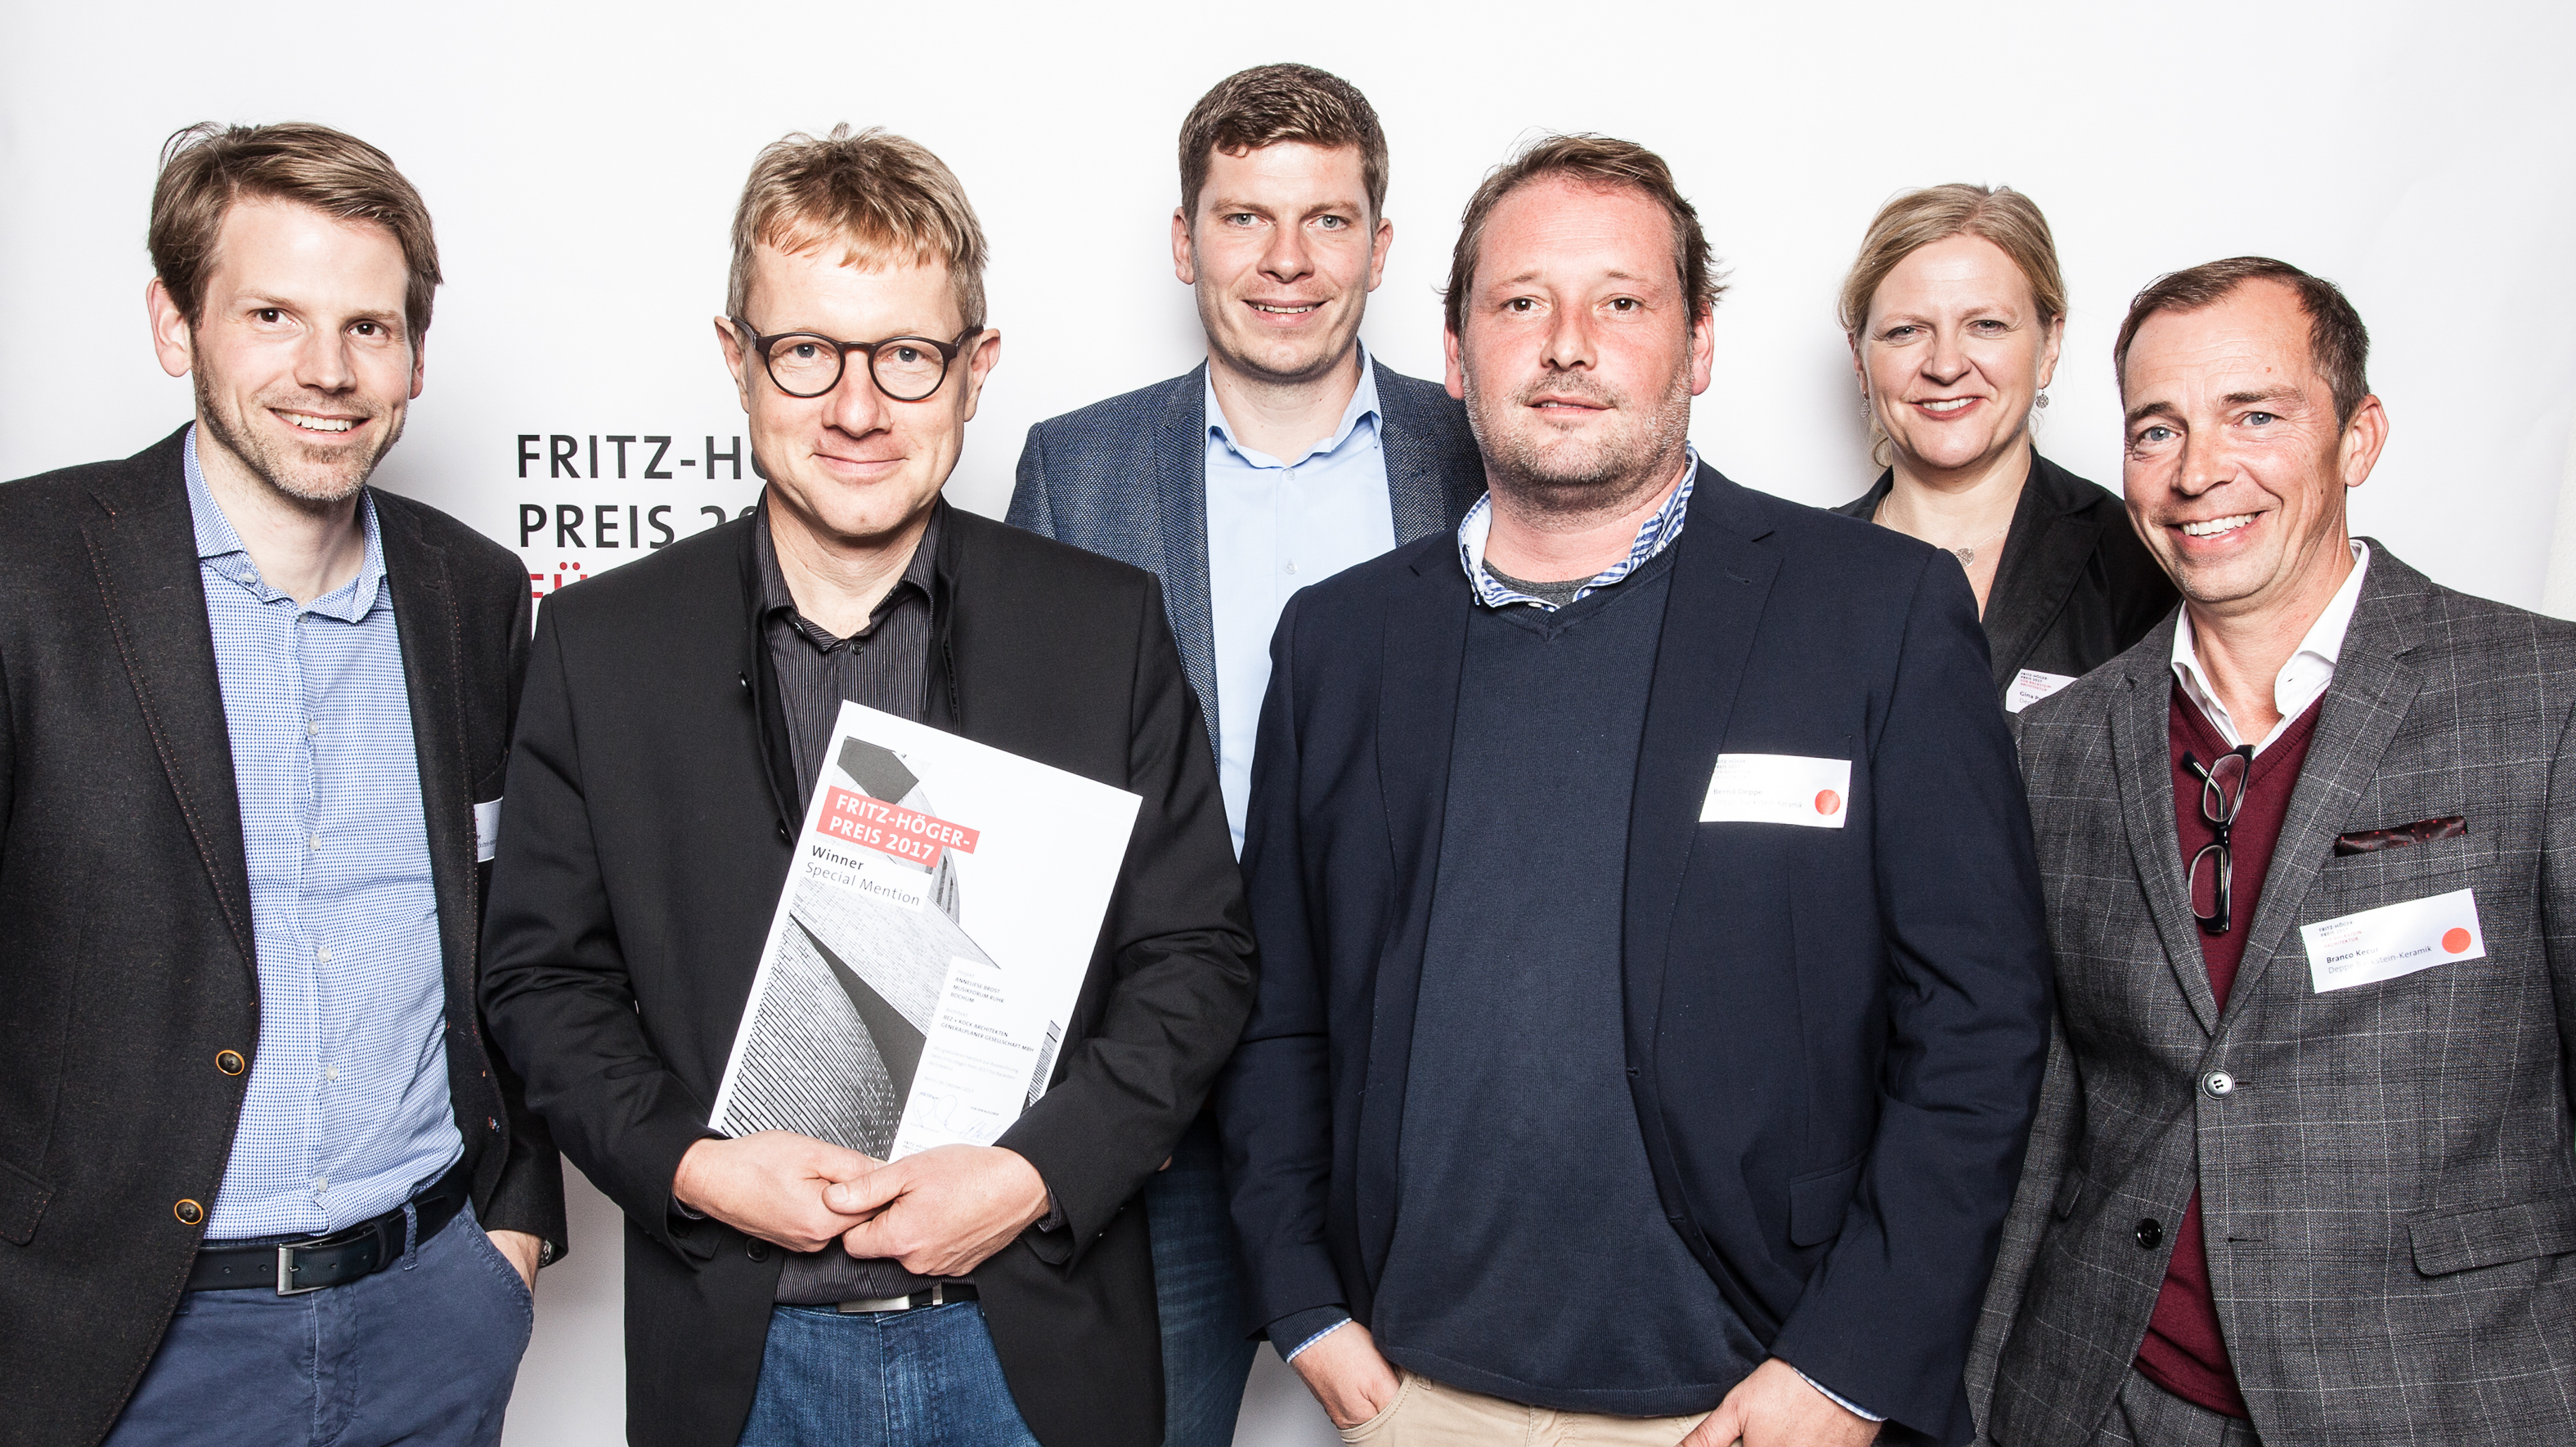 Thorsten Kock (bez+kock, Stuttgart), awarded for Musikforum Bochum